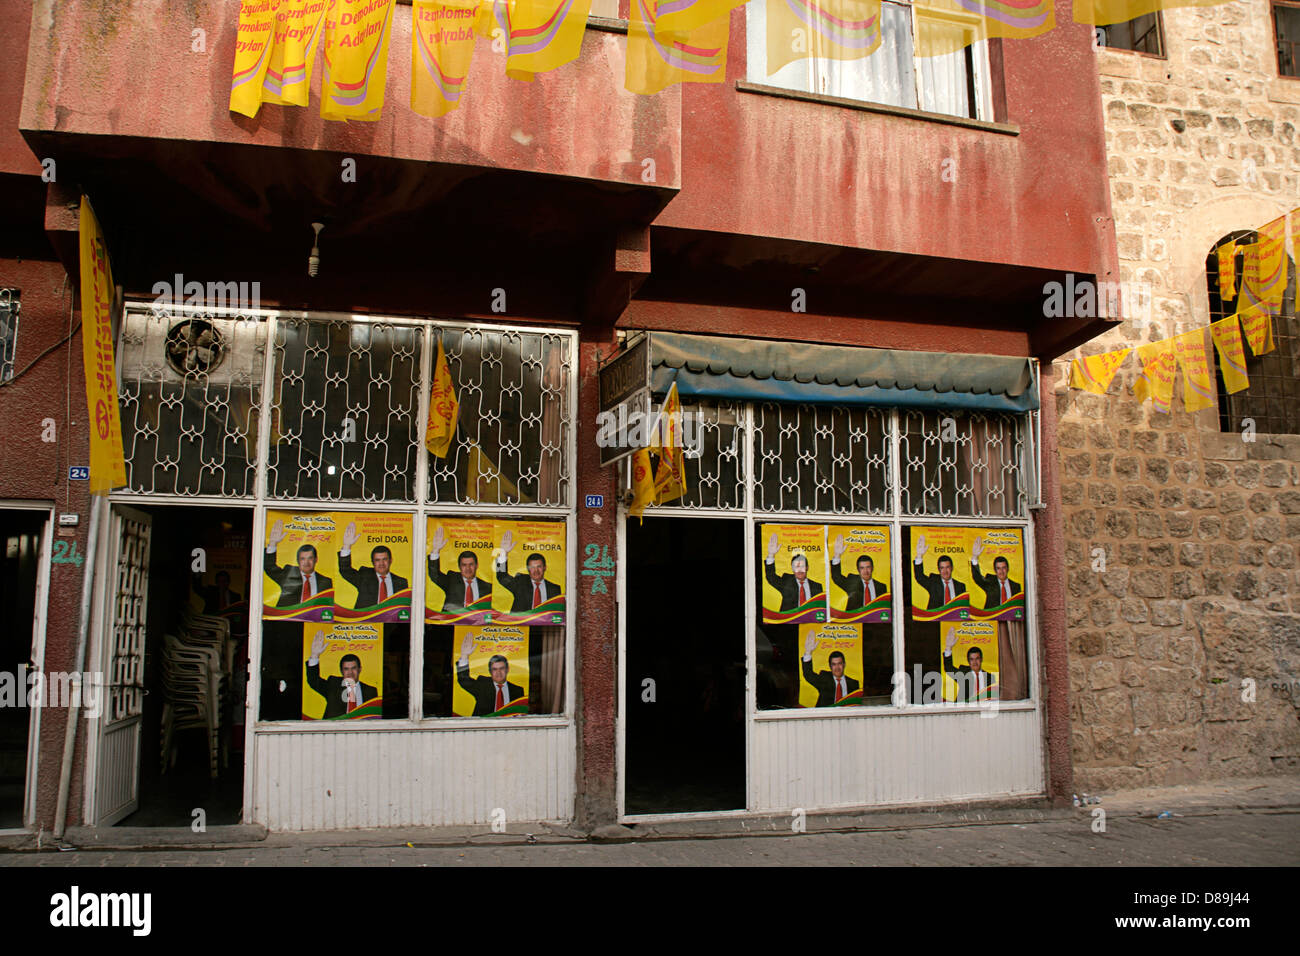 2011 affiches électorales pour les candidats indépendants Erol Dora à Mardin, dans le sud-est de la Turquie Banque D'Images